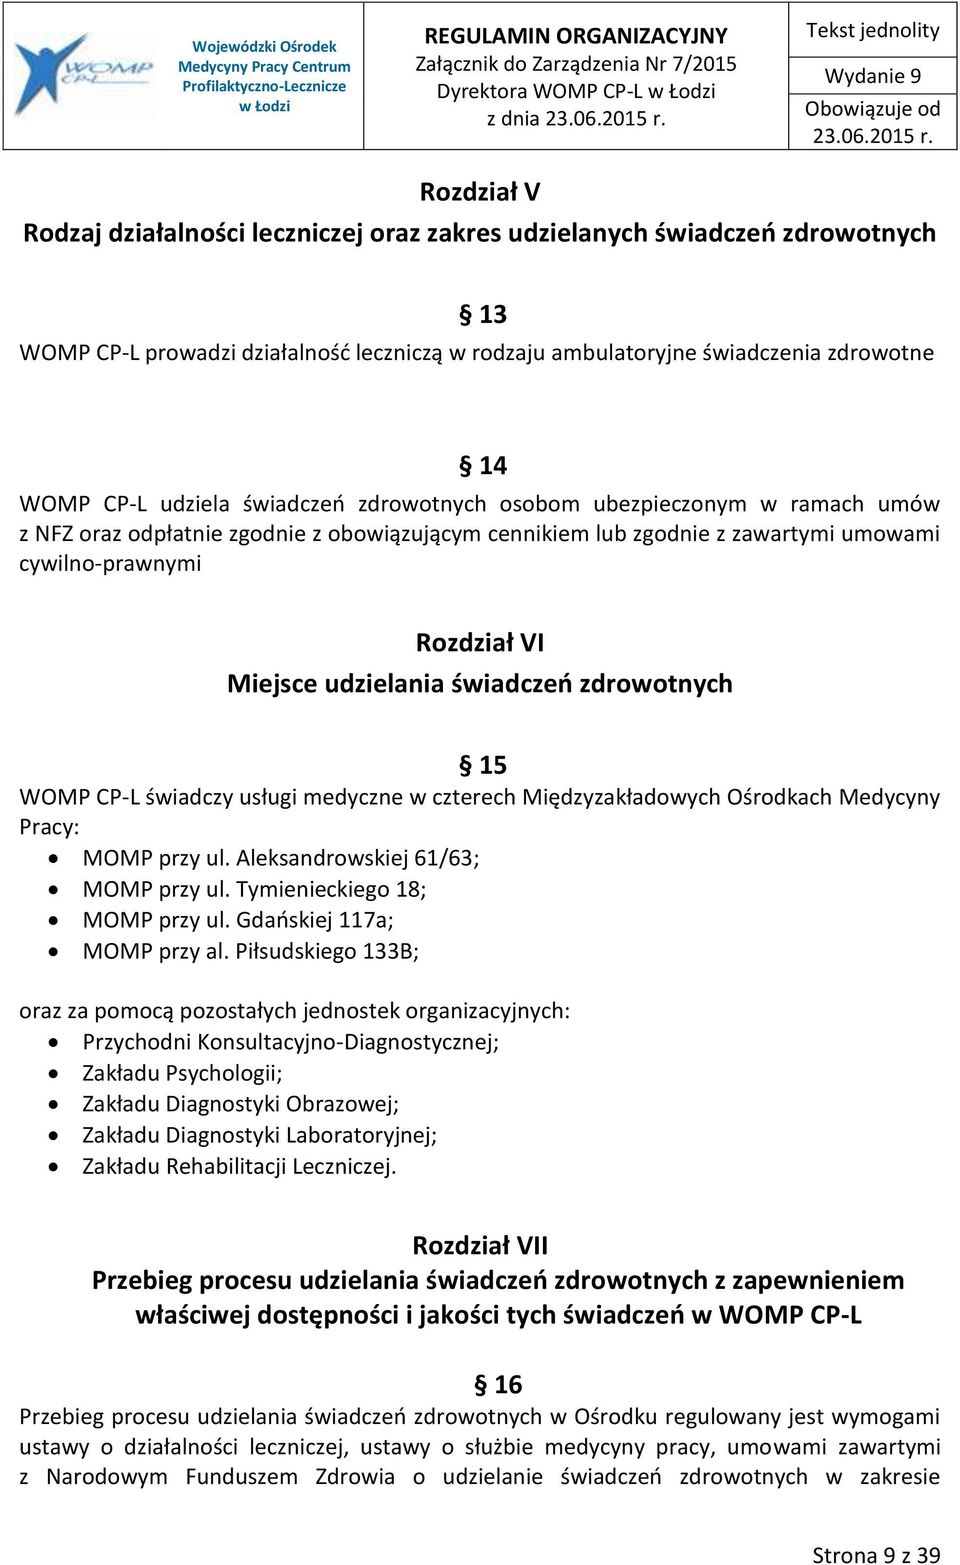 Rozdział VI Miejsce udzielania świadczeń zdrowotnych 15 WOMP CP-L świadczy usługi medyczne w czterech Międzyzakładowych Ośrodkach Medycyny Pracy: MOMP przy ul. Aleksandrowskiej 61/63; MOMP przy ul.